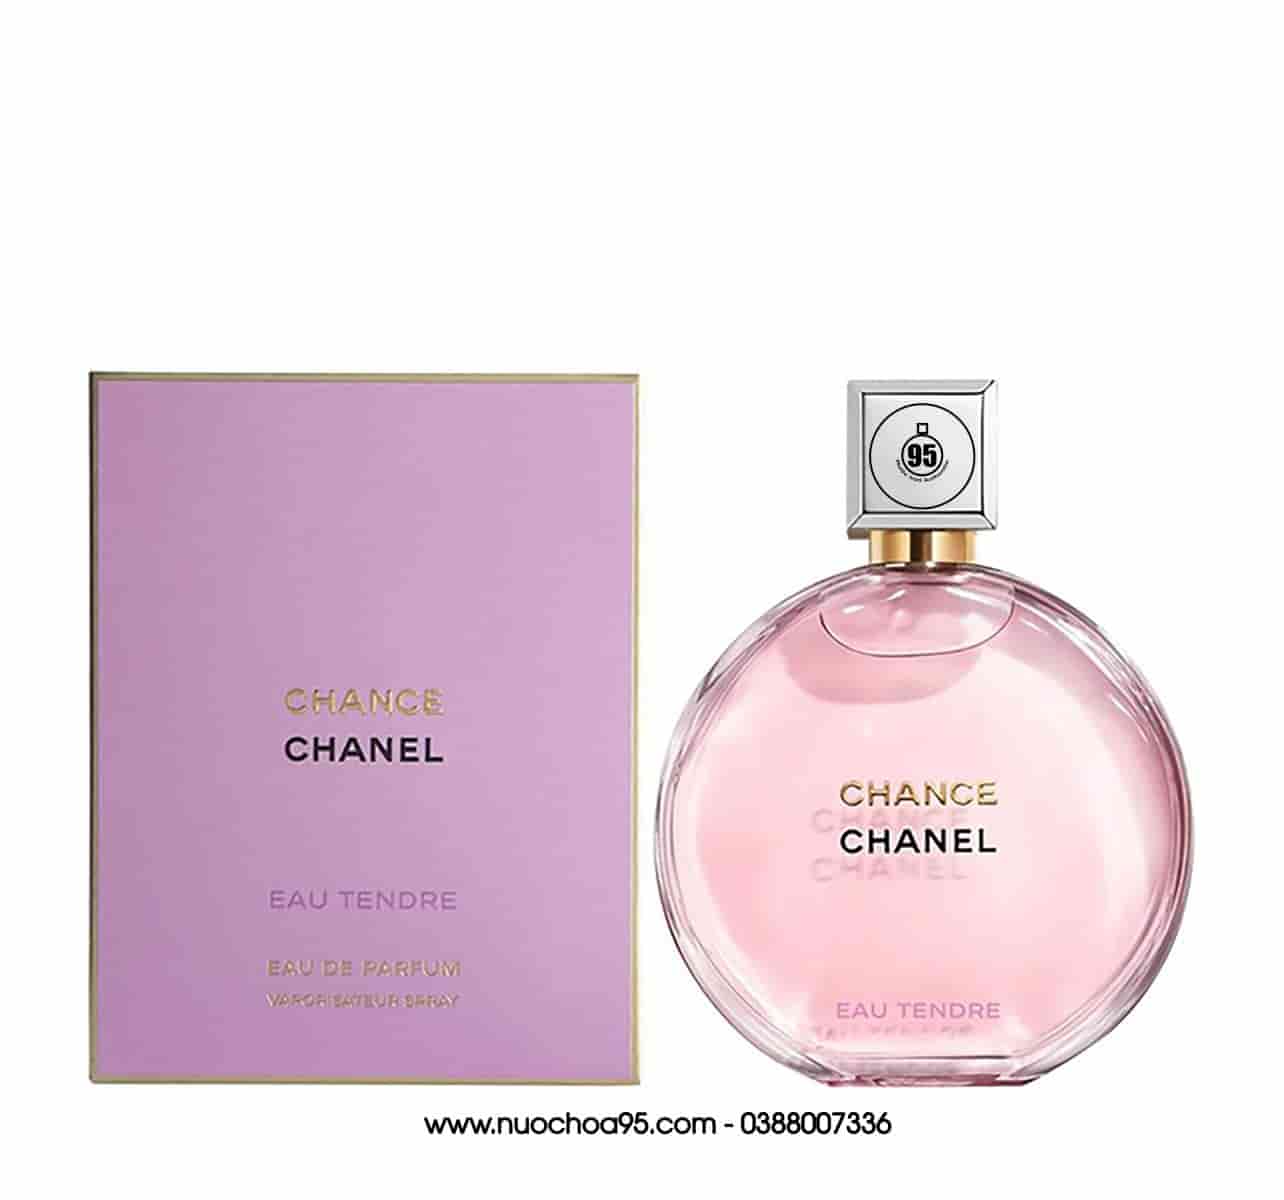 Nước Hoa Chanel Chance Vàng Eau De Parfum 100ML Chính Hãng Giá Rẻ Nhất   Thế Giới Son Môi